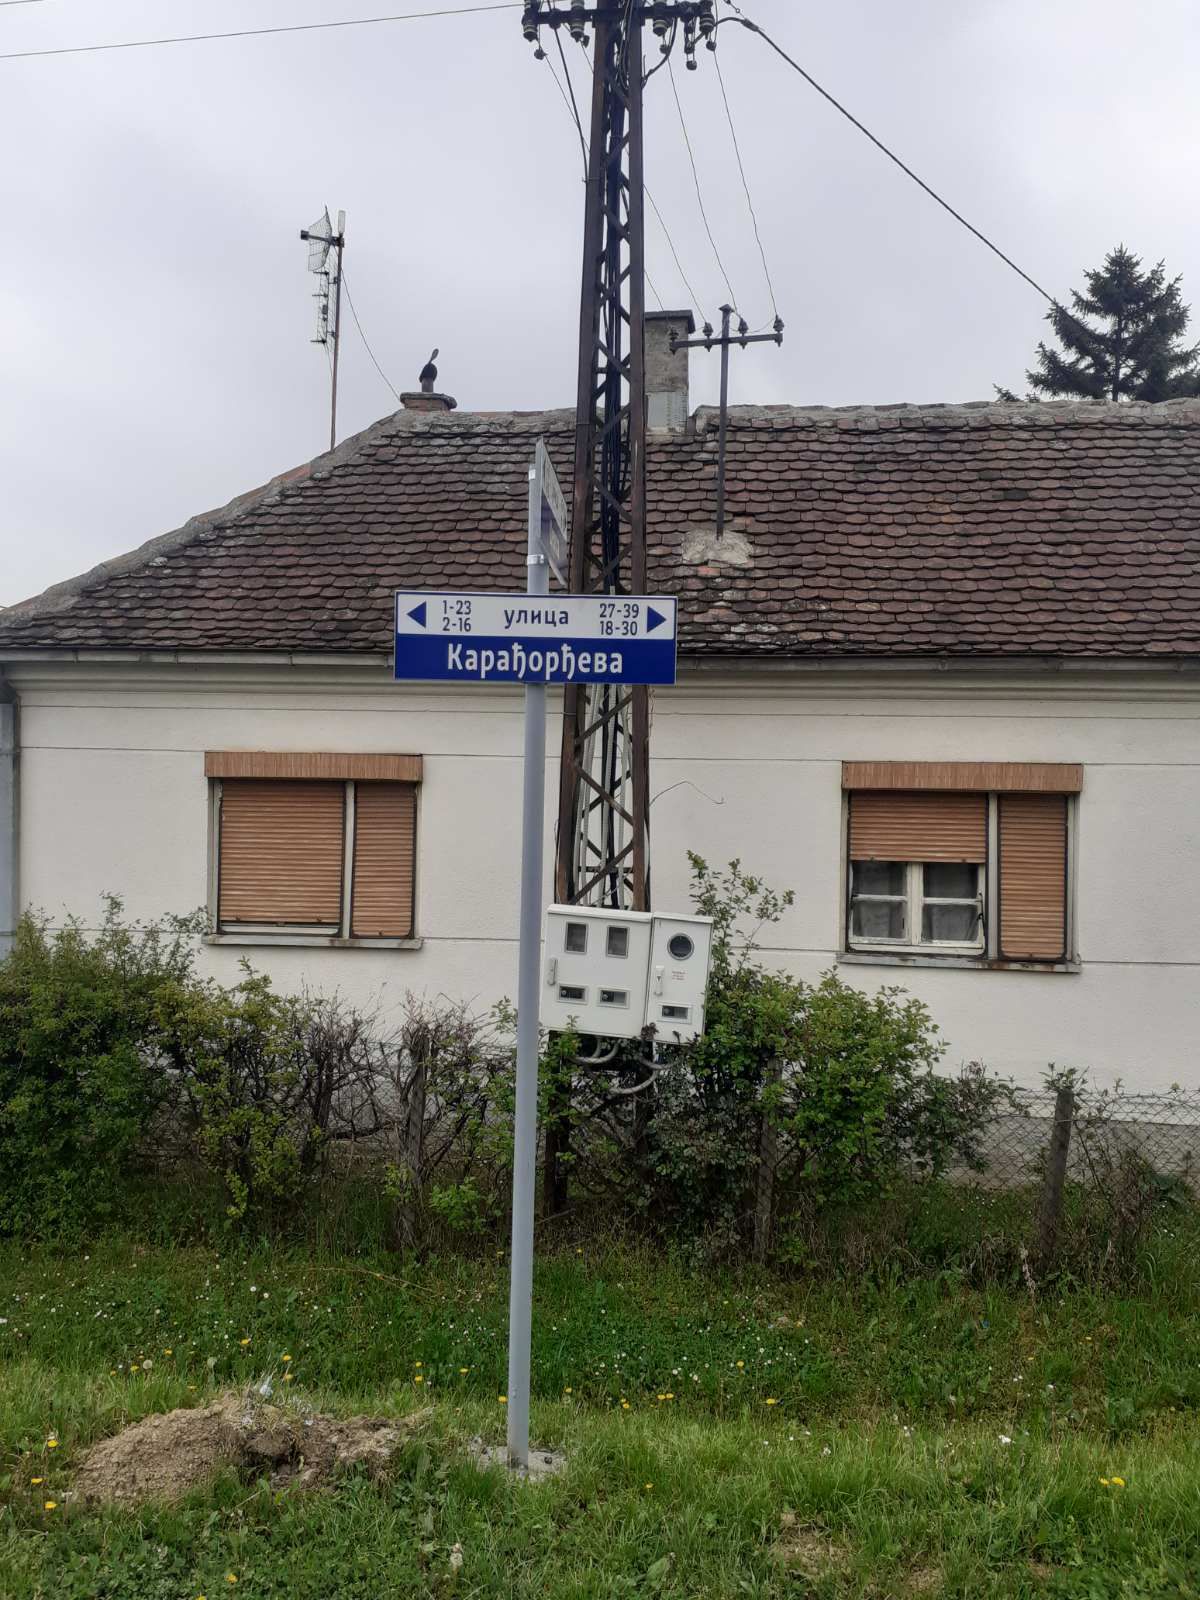 Postavljanje znakova sa nazivima ulica u Vladimircima